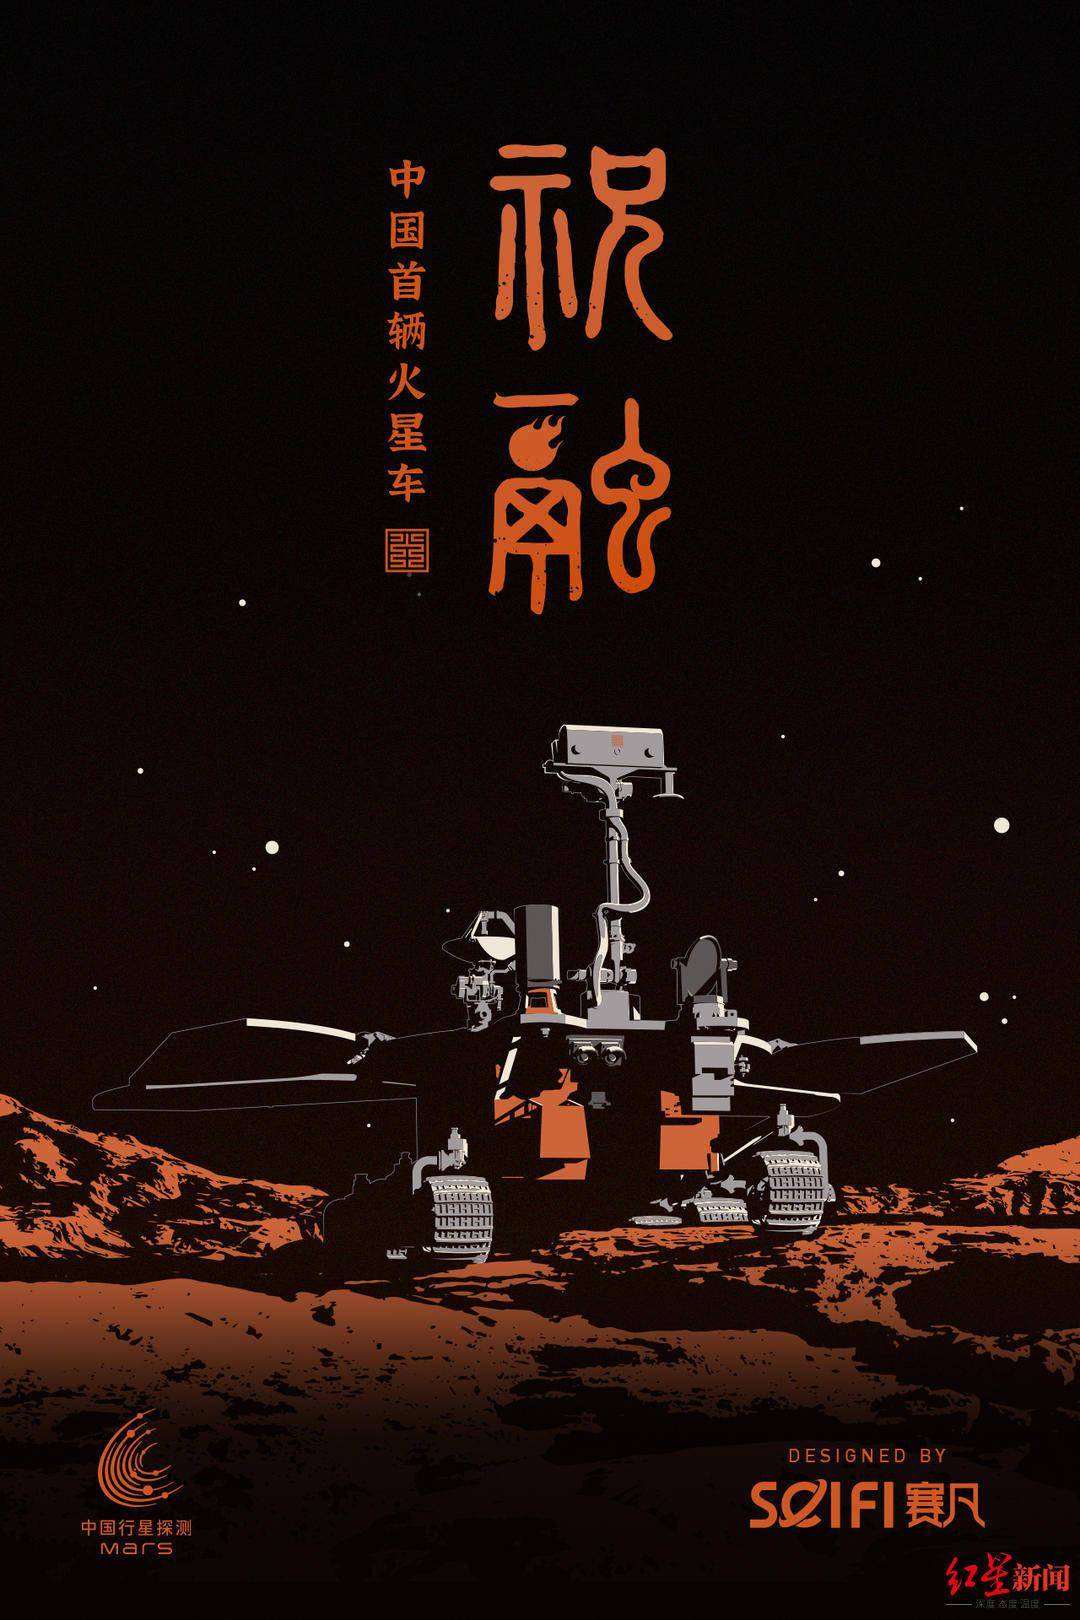 专访中国火星车祝融虚拟形象设计团队:打造属于中国的科幻ip周边